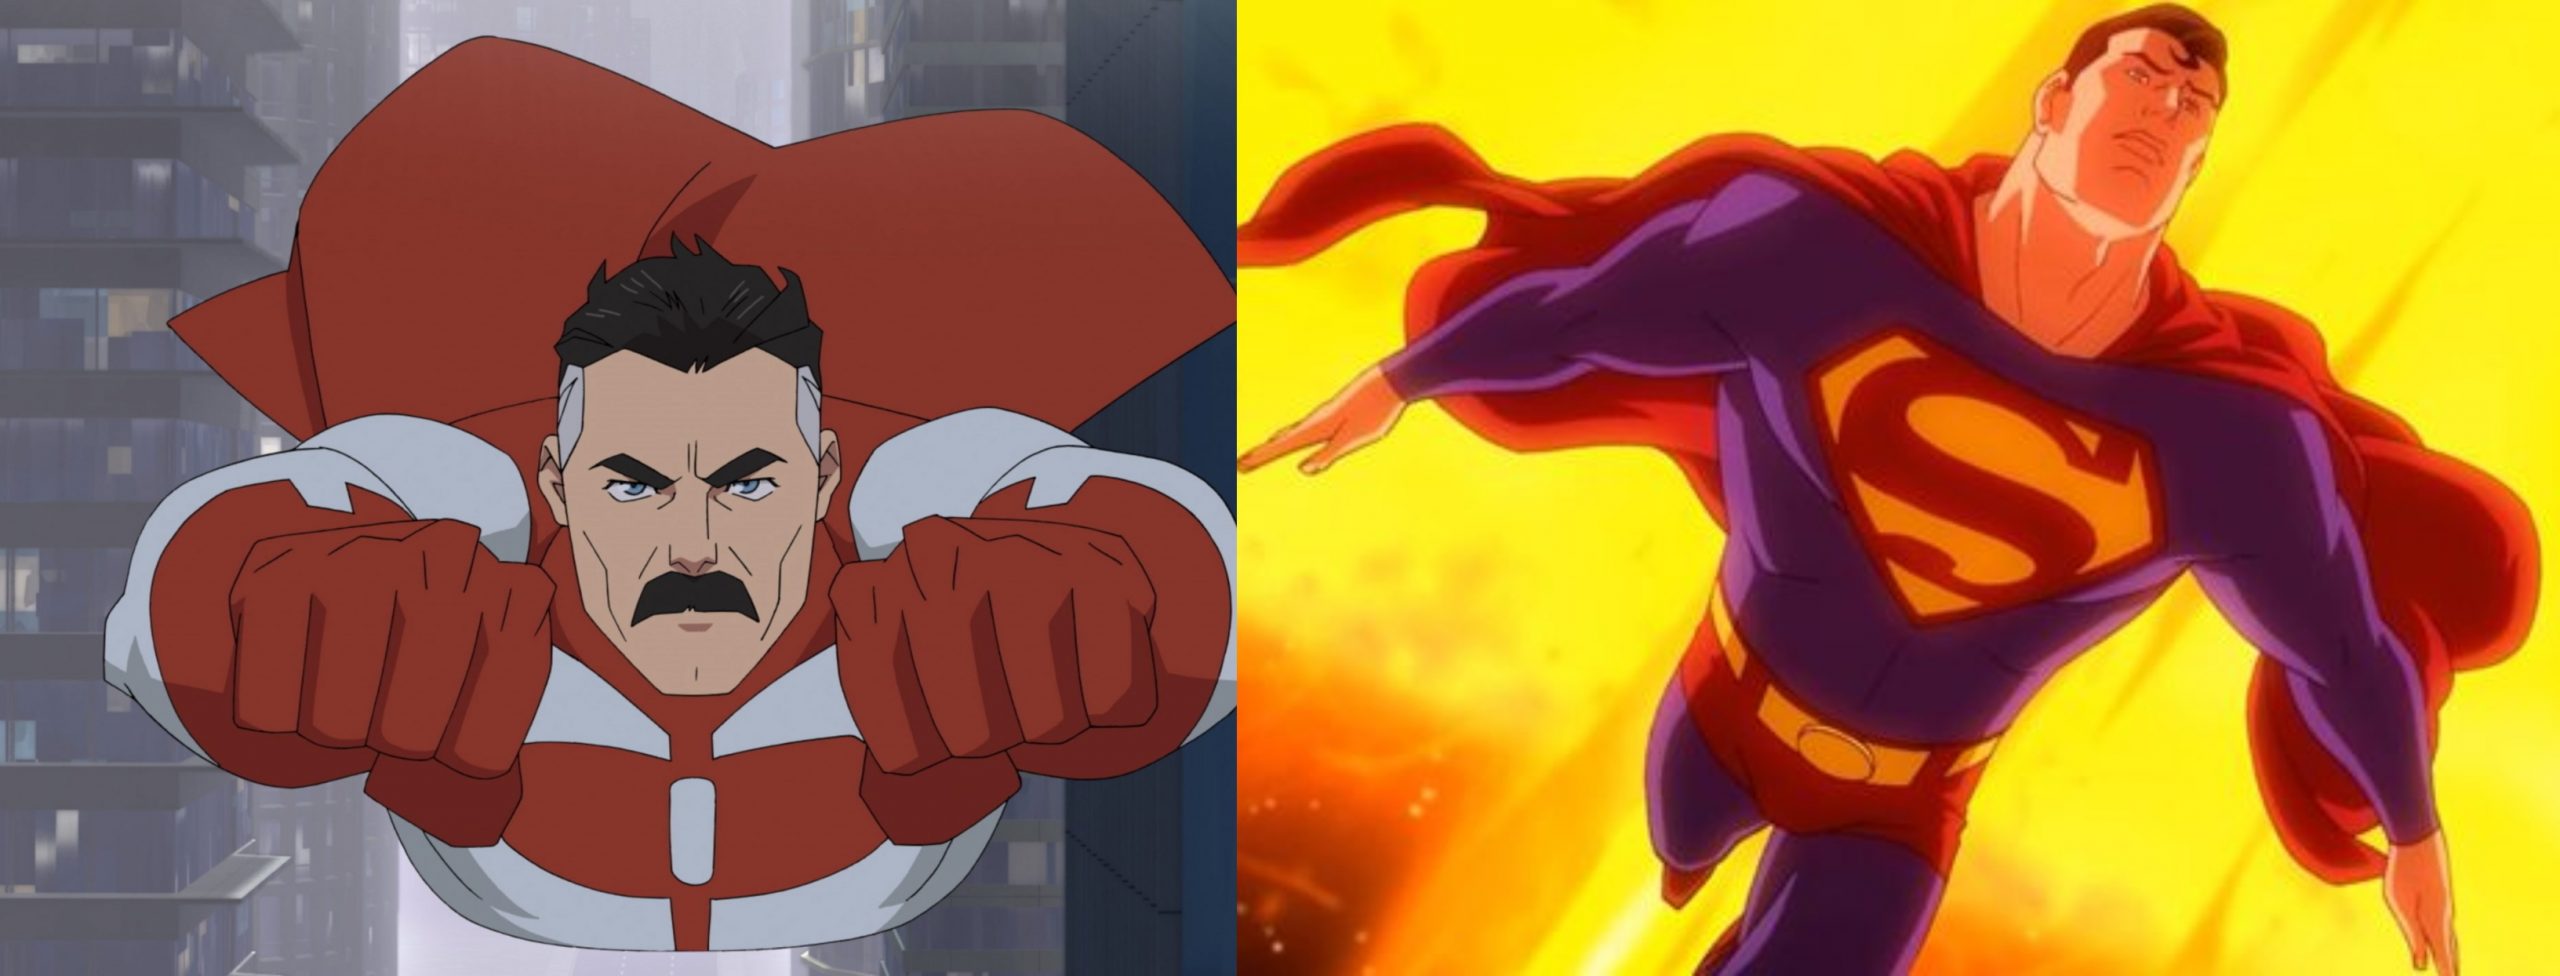 Superman omni man vs cosmic spider